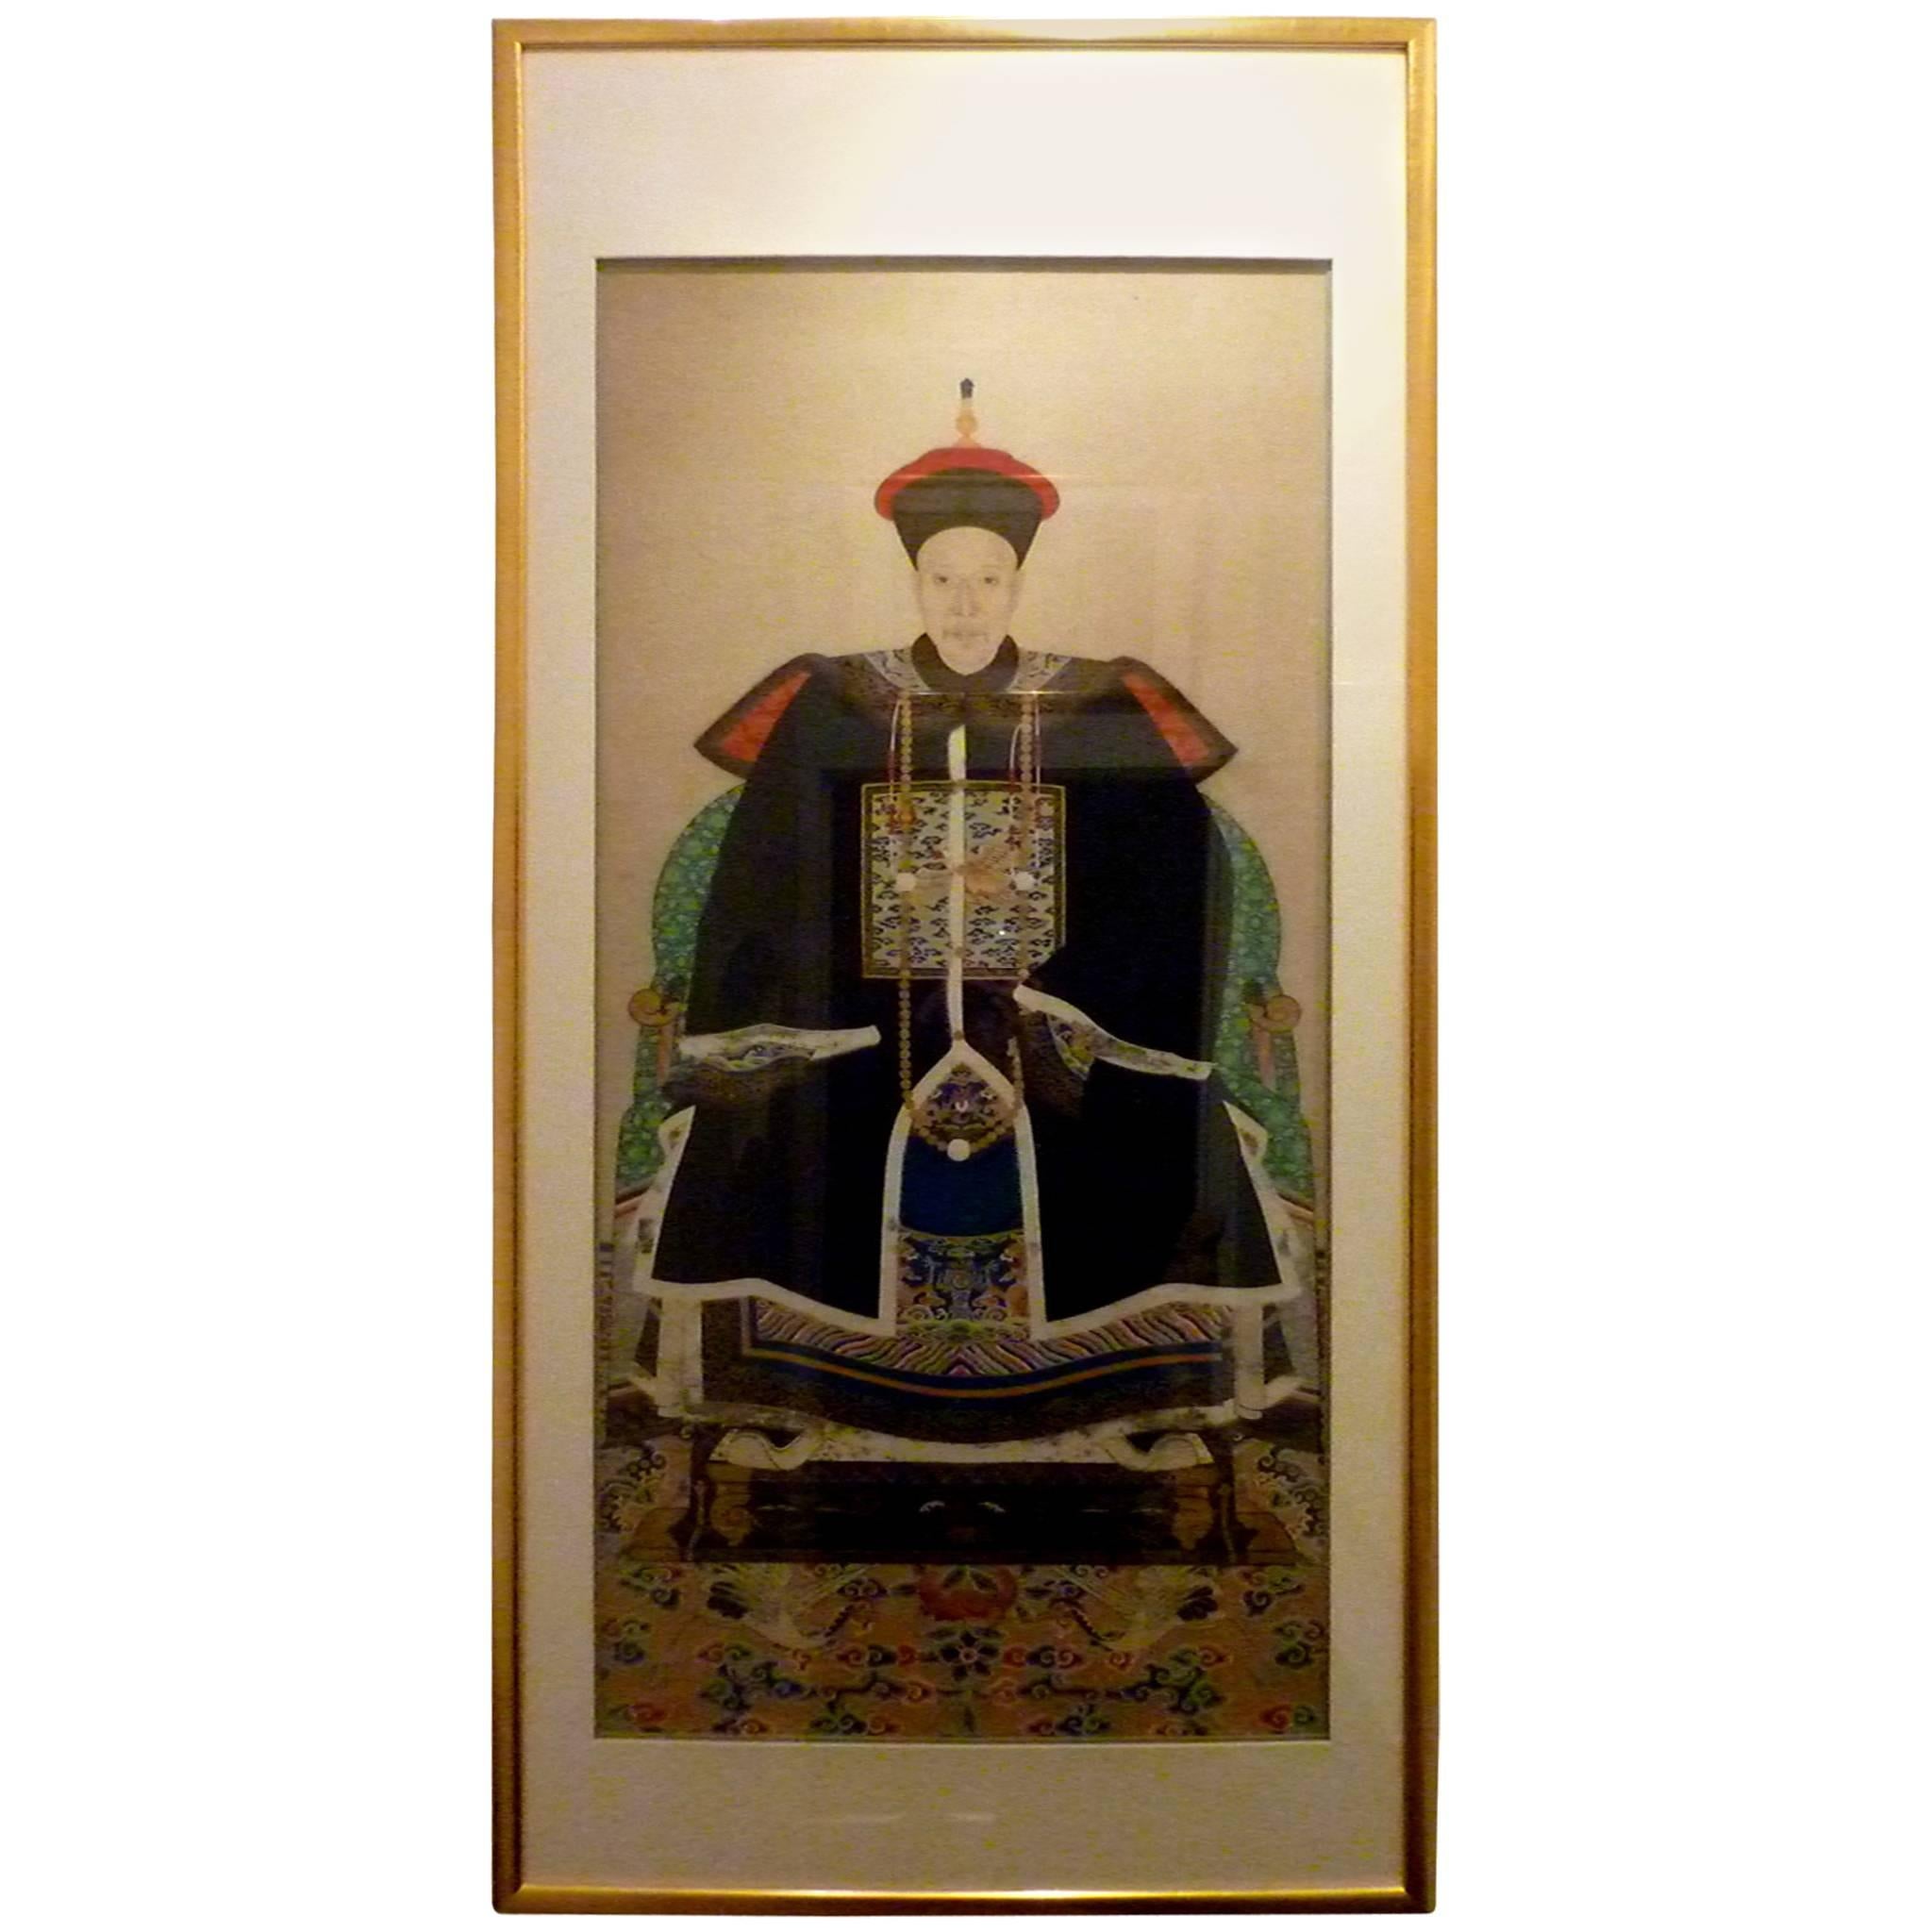 Schönes Porträt eines kaiserlichen Zivilbeamten